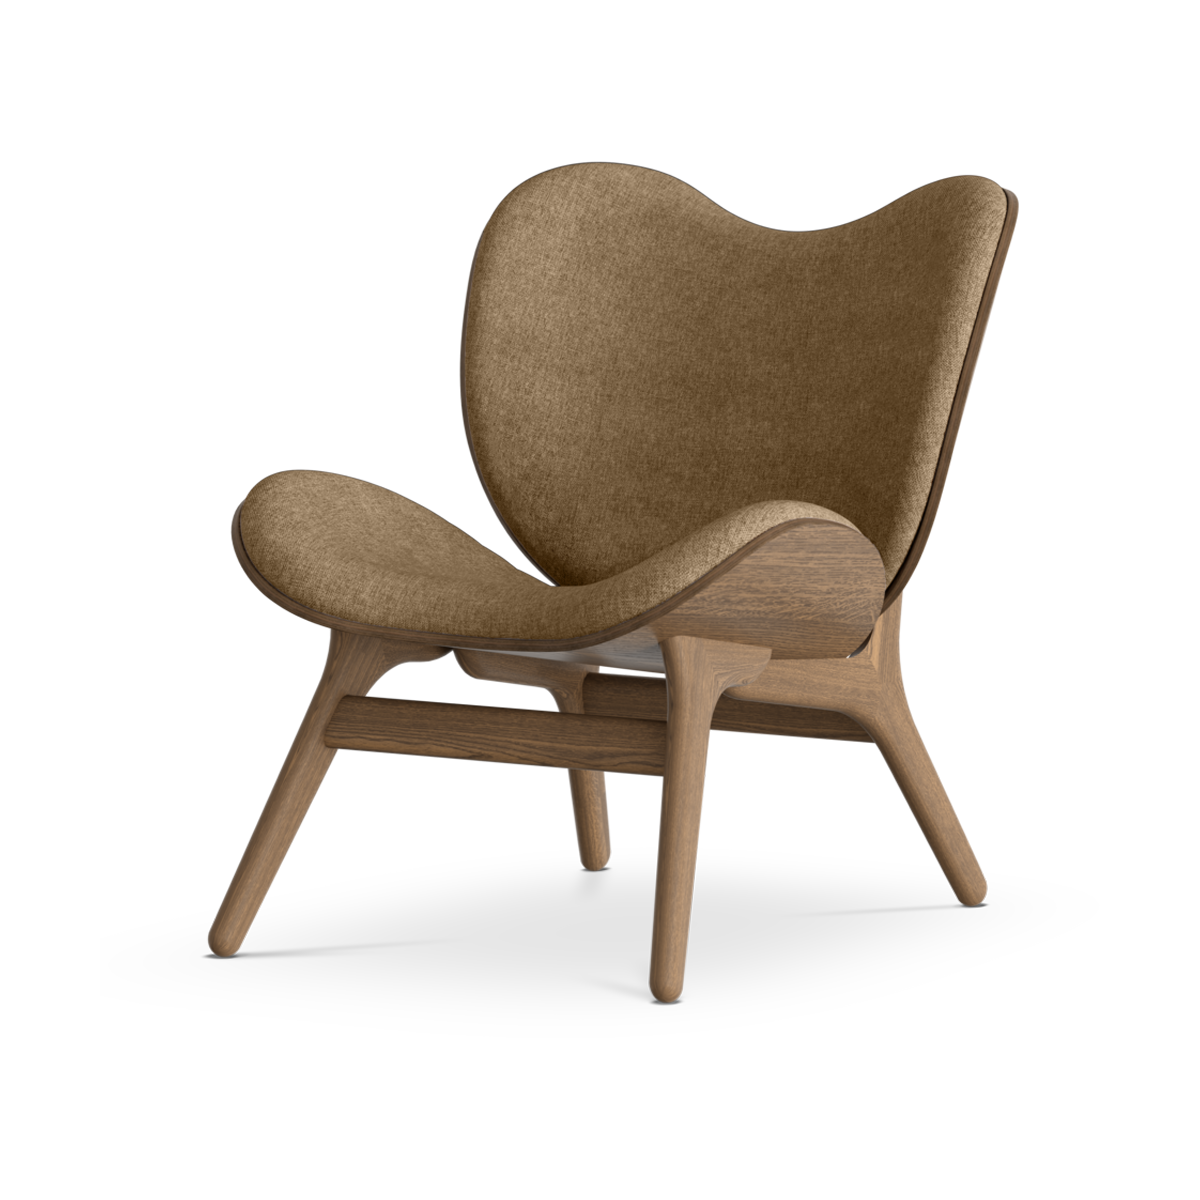 A Conversation Piece houten fauteuil donker eiken - Sugar Brown